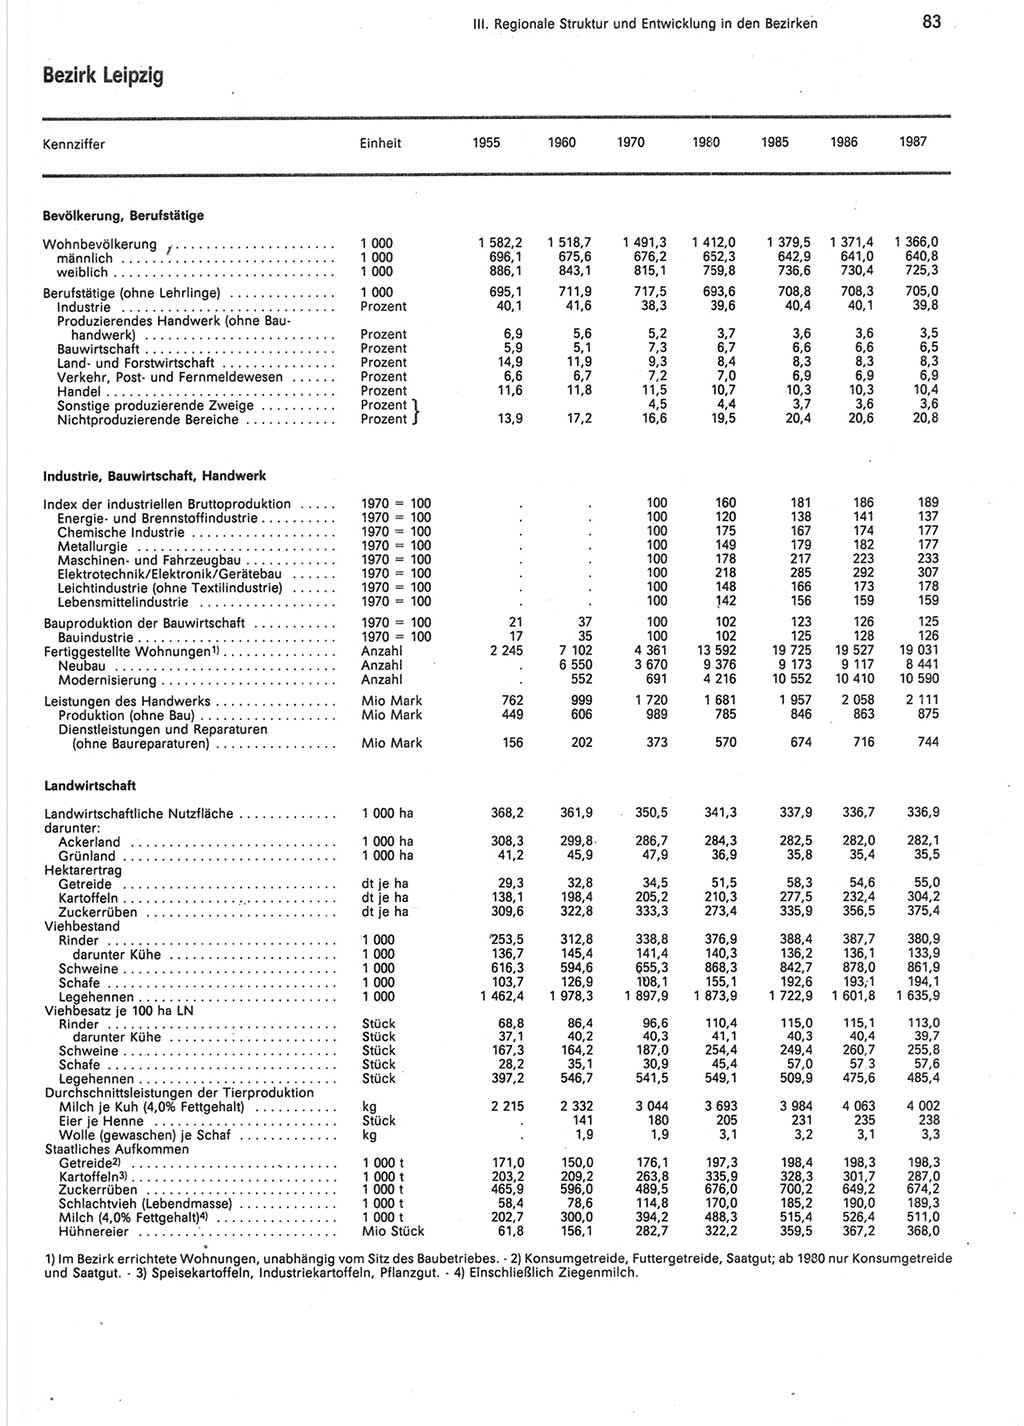 Statistisches Jahrbuch der Deutschen Demokratischen Republik (DDR) 1988, Seite 83 (Stat. Jb. DDR 1988, S. 83)